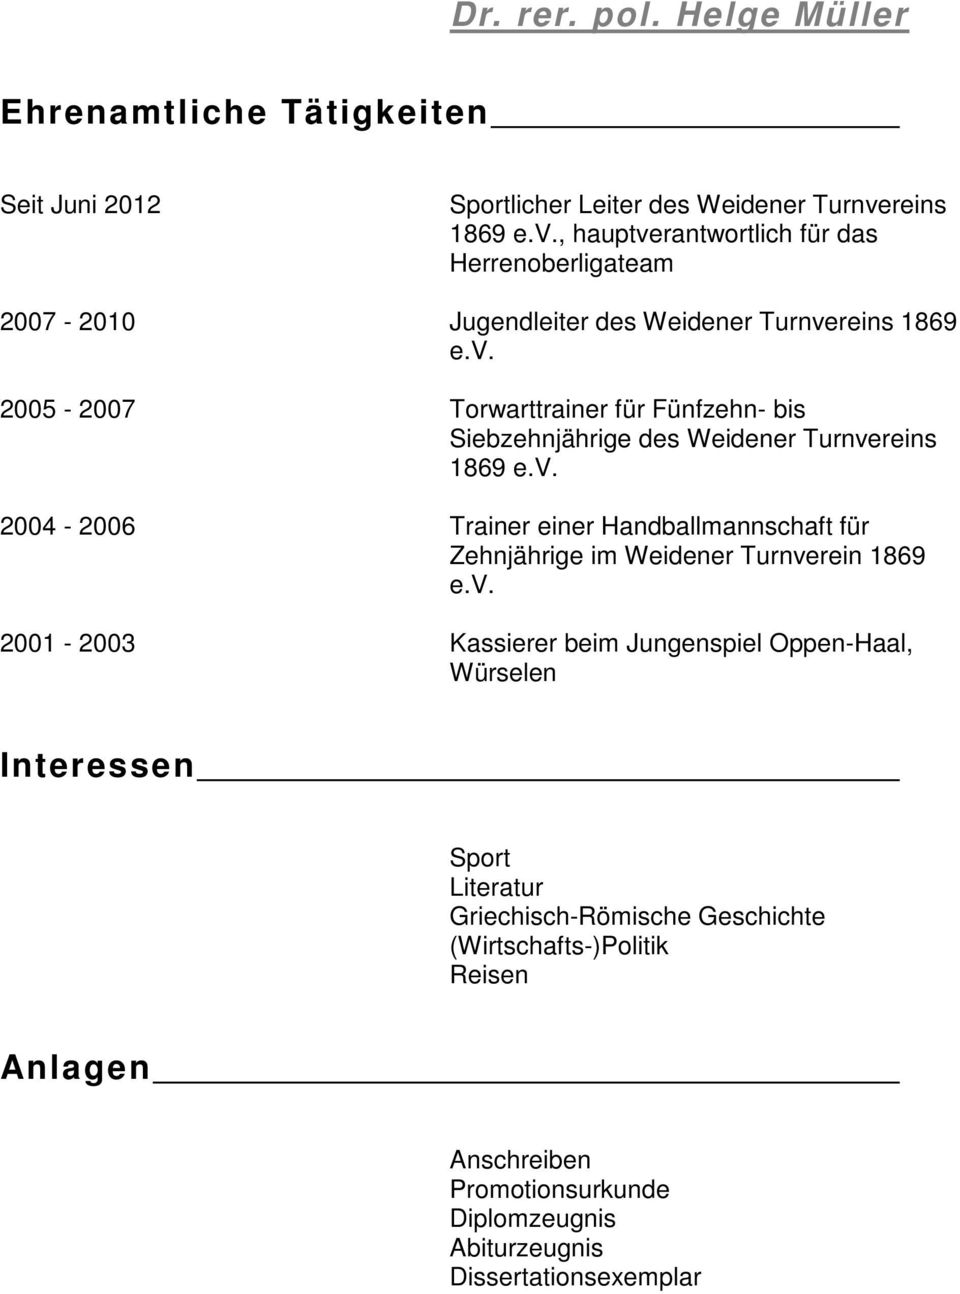 v. 2004-2006 Trainer einer Handballmannschaft für Zehnjährige im Weidener Turnverein 1869 e.v. 2001-2003 Kassierer beim Jungenspiel Oppen-Haal, Würselen